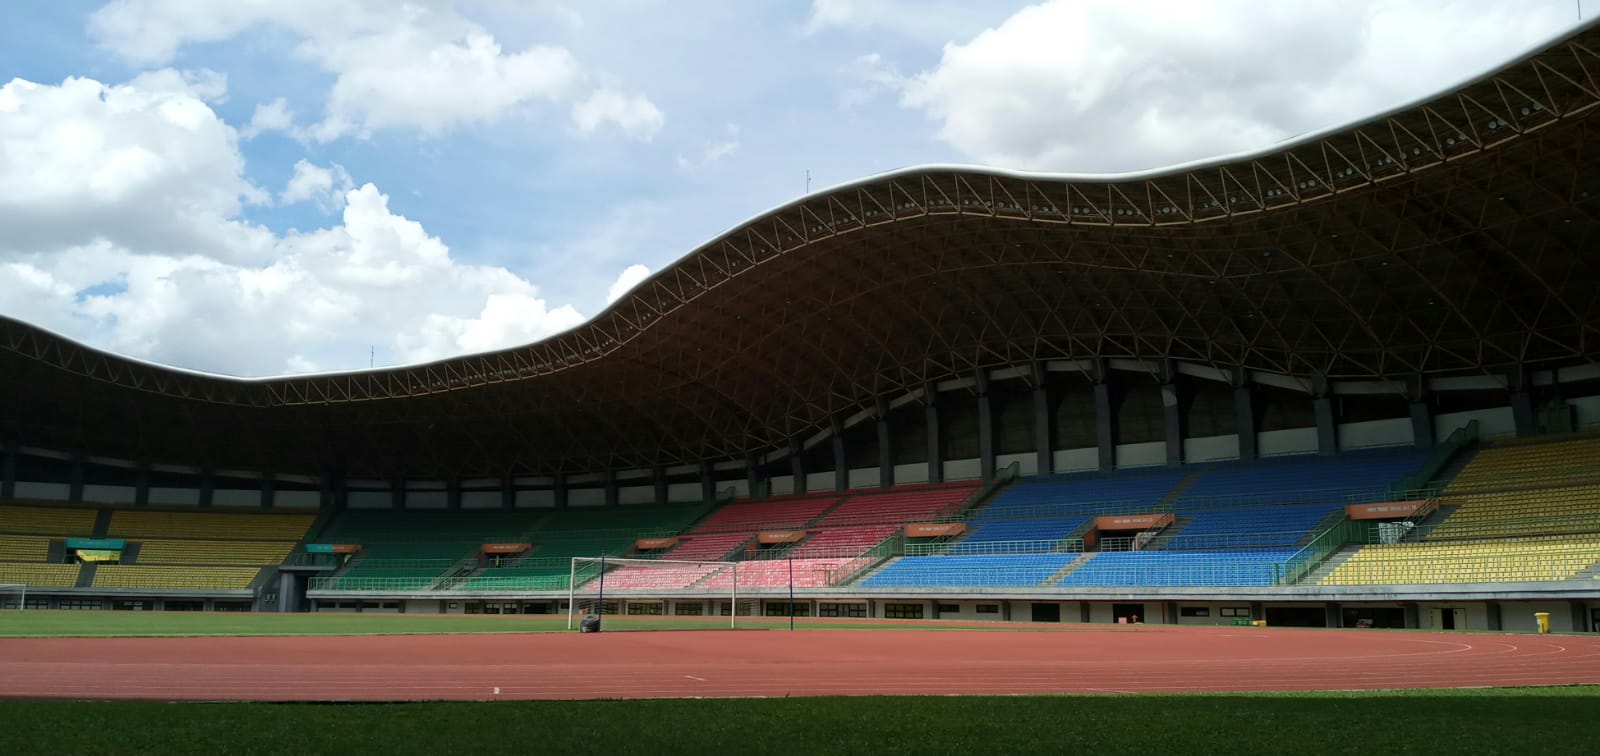 Stadion Patriot Chandrabaga Kota Bekasi akan Digunakan Home Base Bhayangkara FC